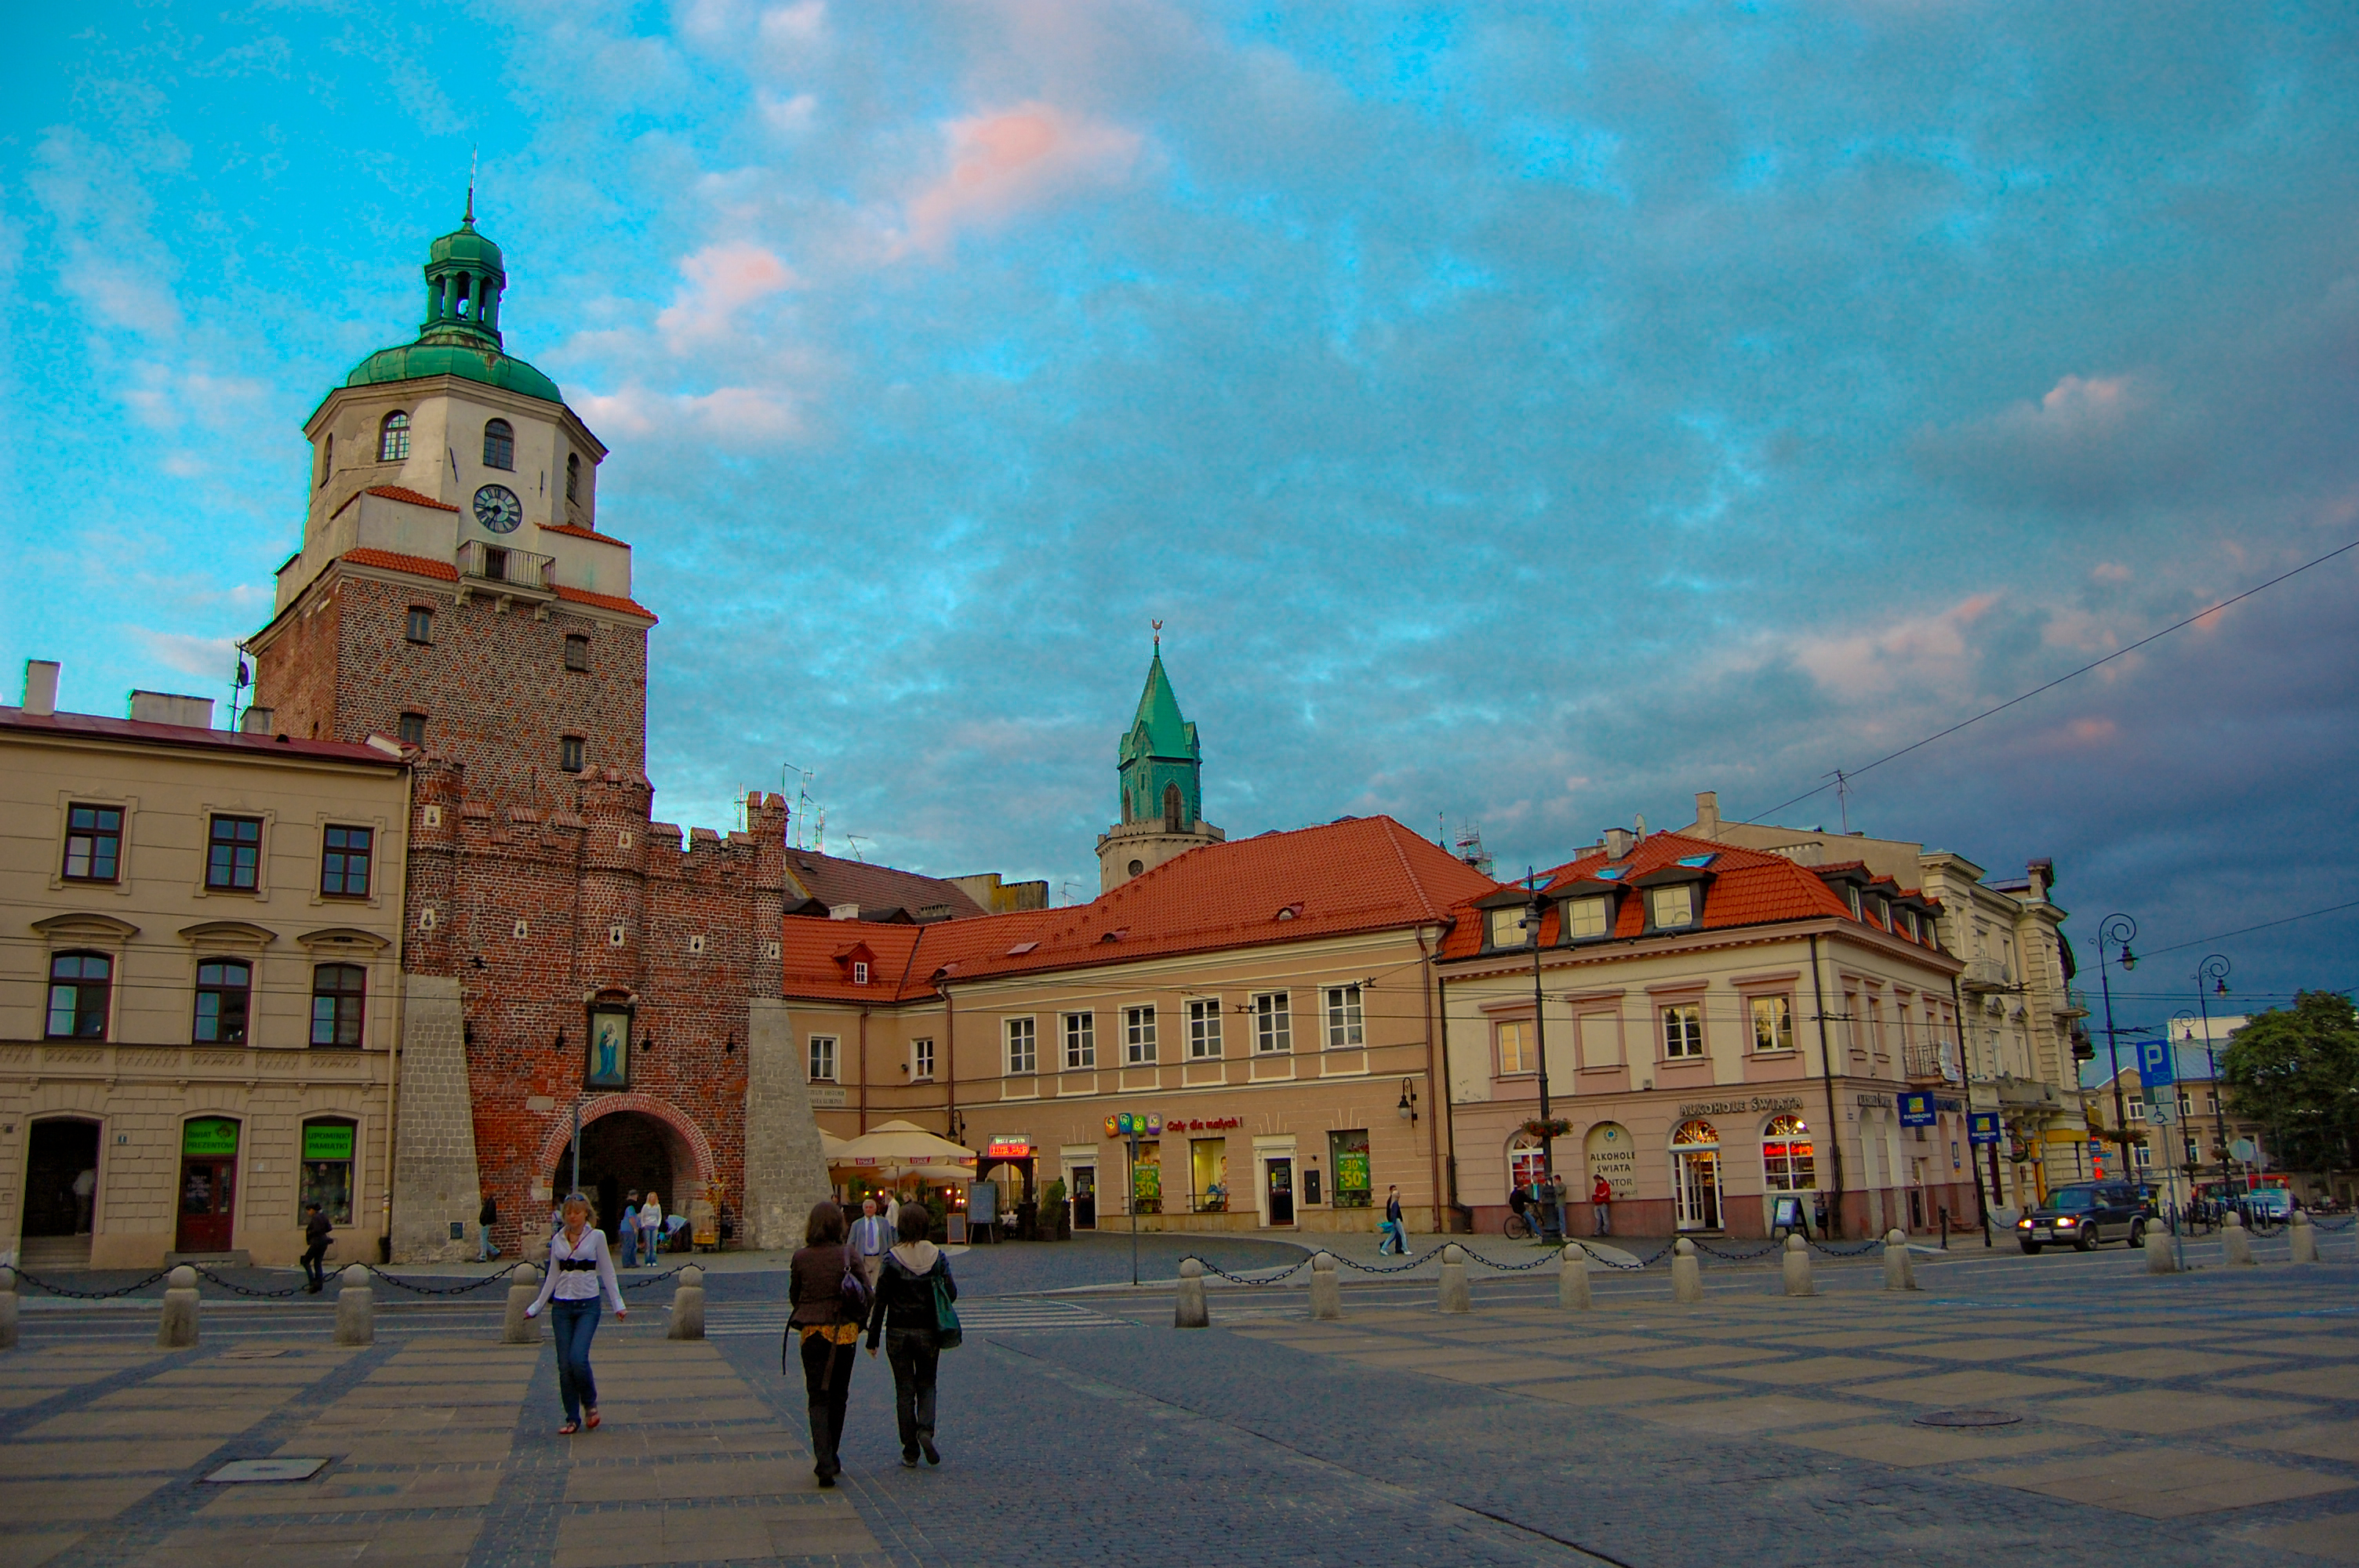 Résultat de recherche d'images pour "Lublin"